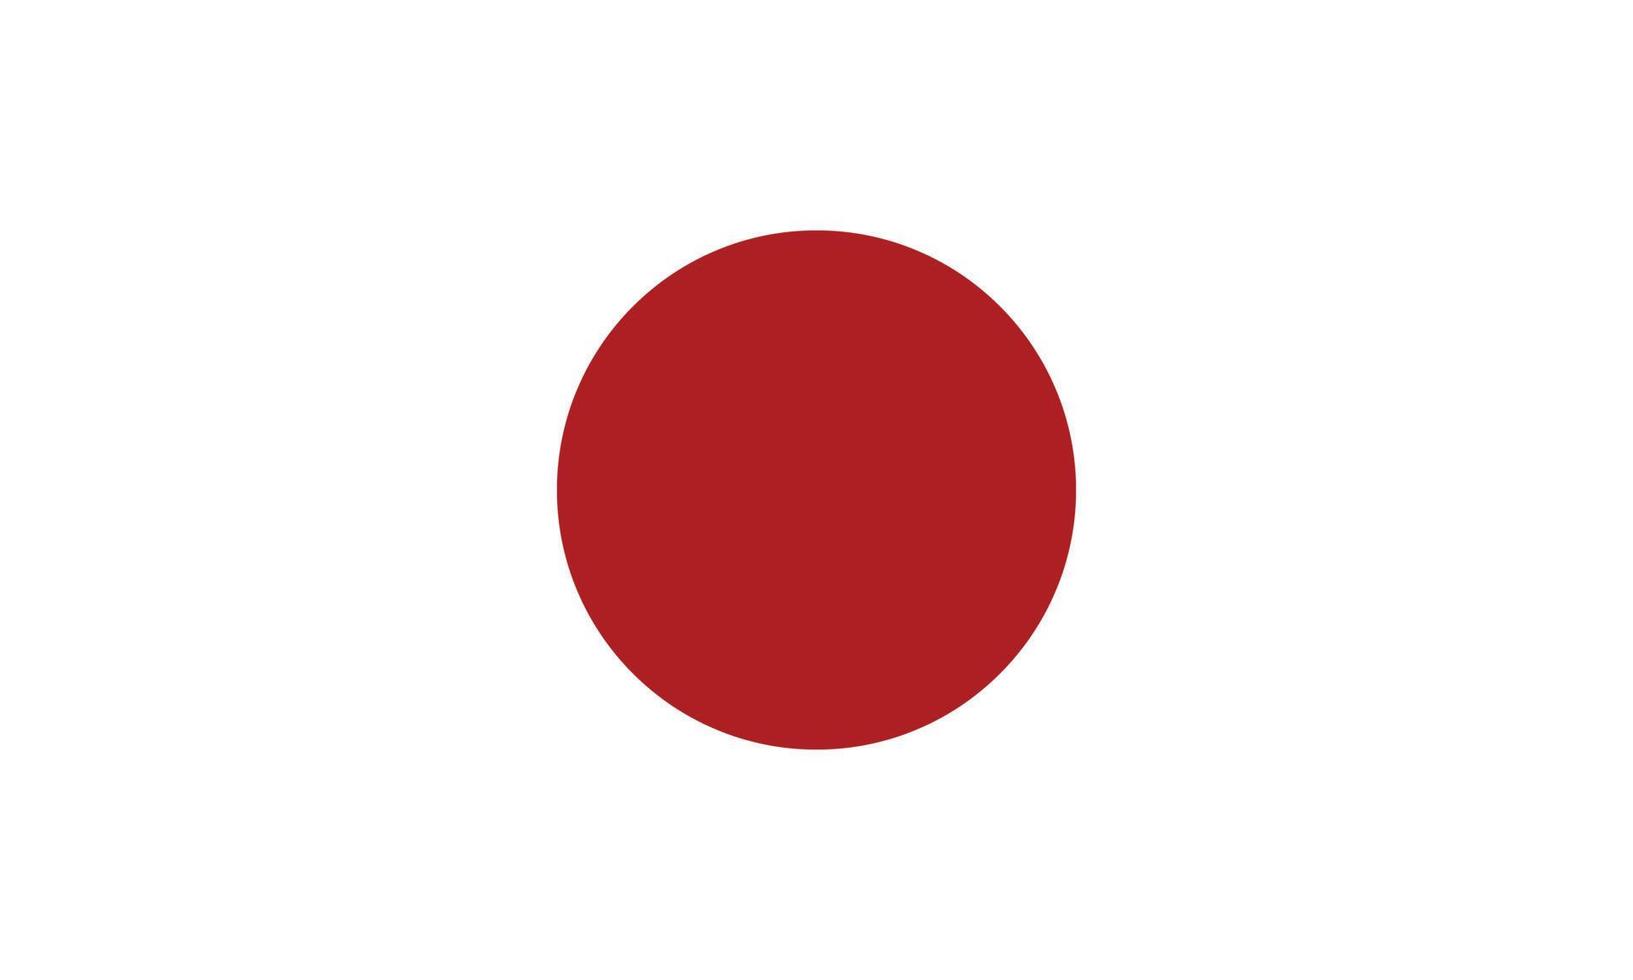 eps10 vetor vermelho e branco ícone da bandeira do Japão símbolo da bandeira nacional japonesa em um estilo moderno simples e moderno para o design do seu site, logotipo, pictograma, interface do usuário e aplicativo móvel